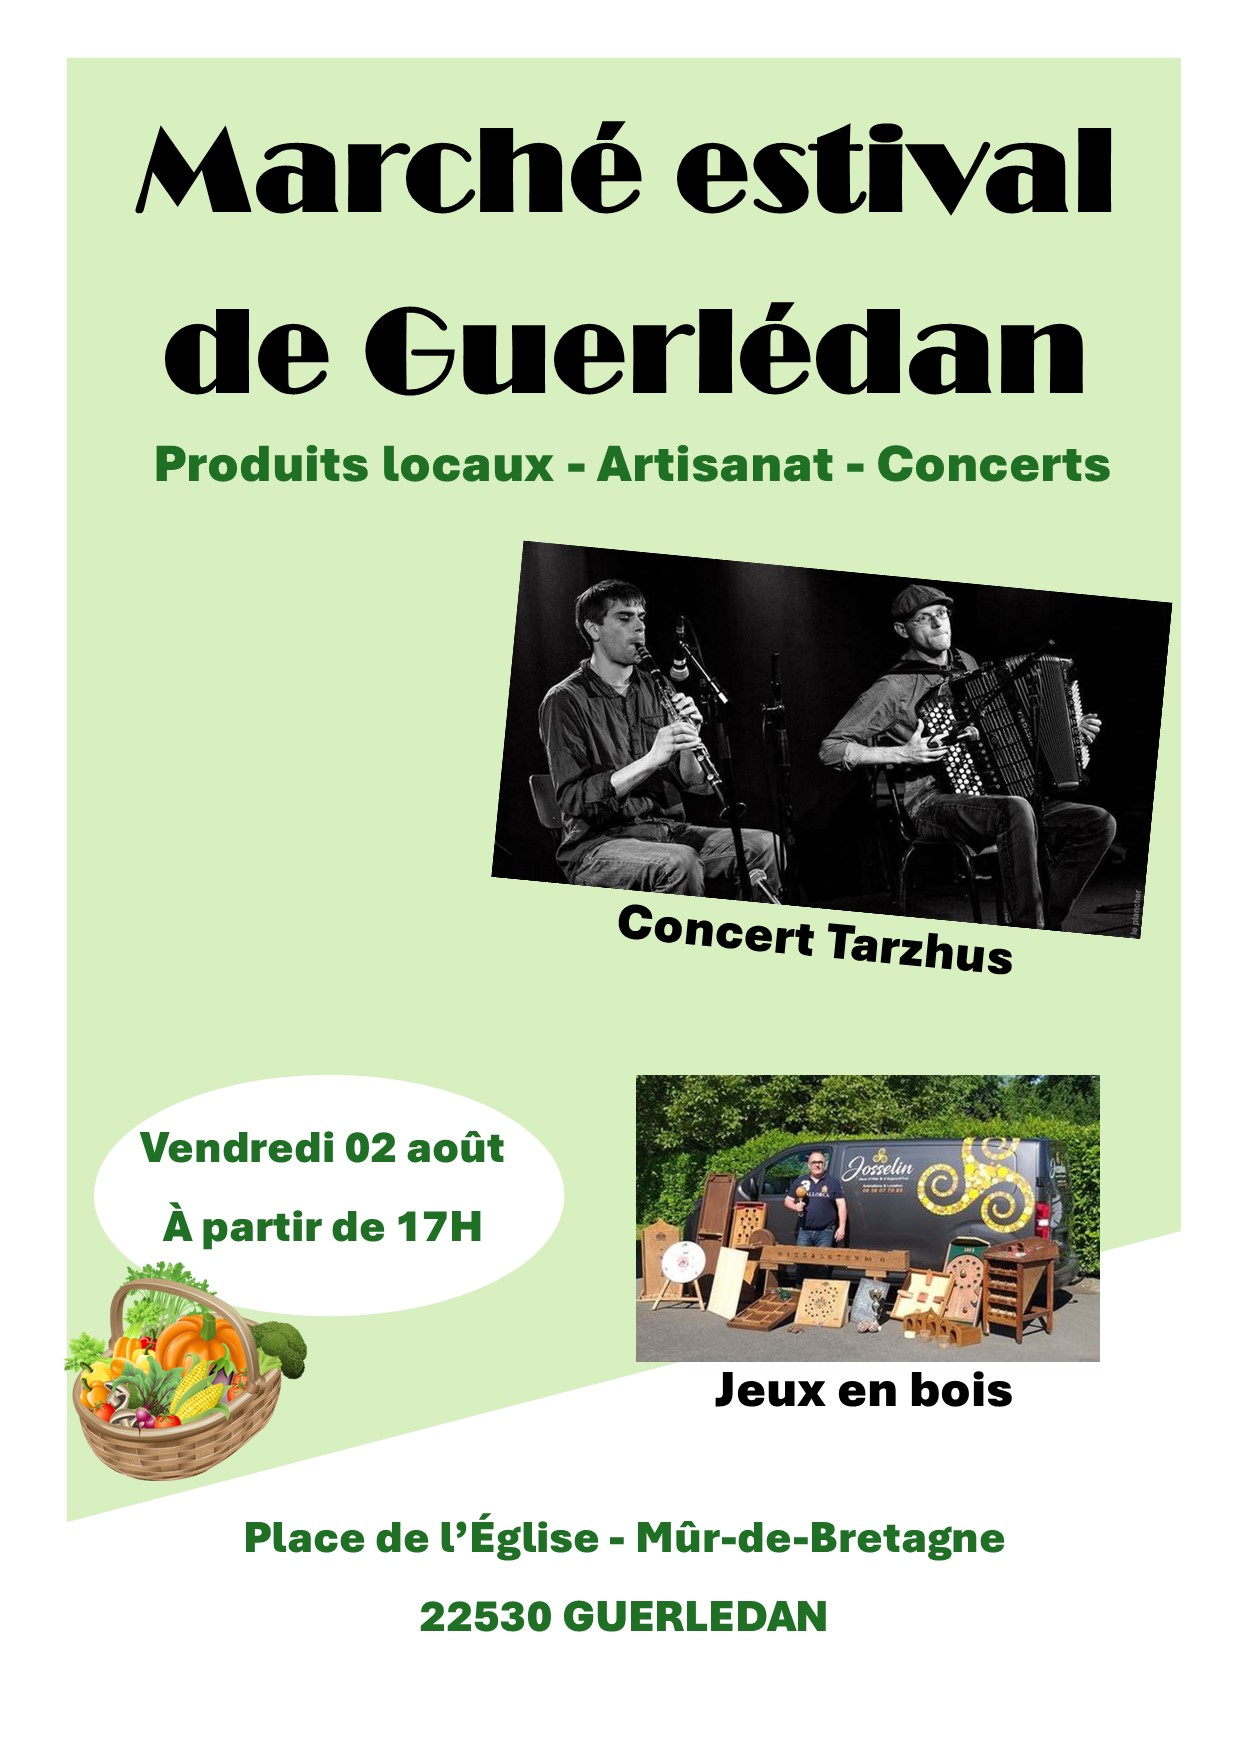 Marché estival de Guerlédan - Concert Tarzhus